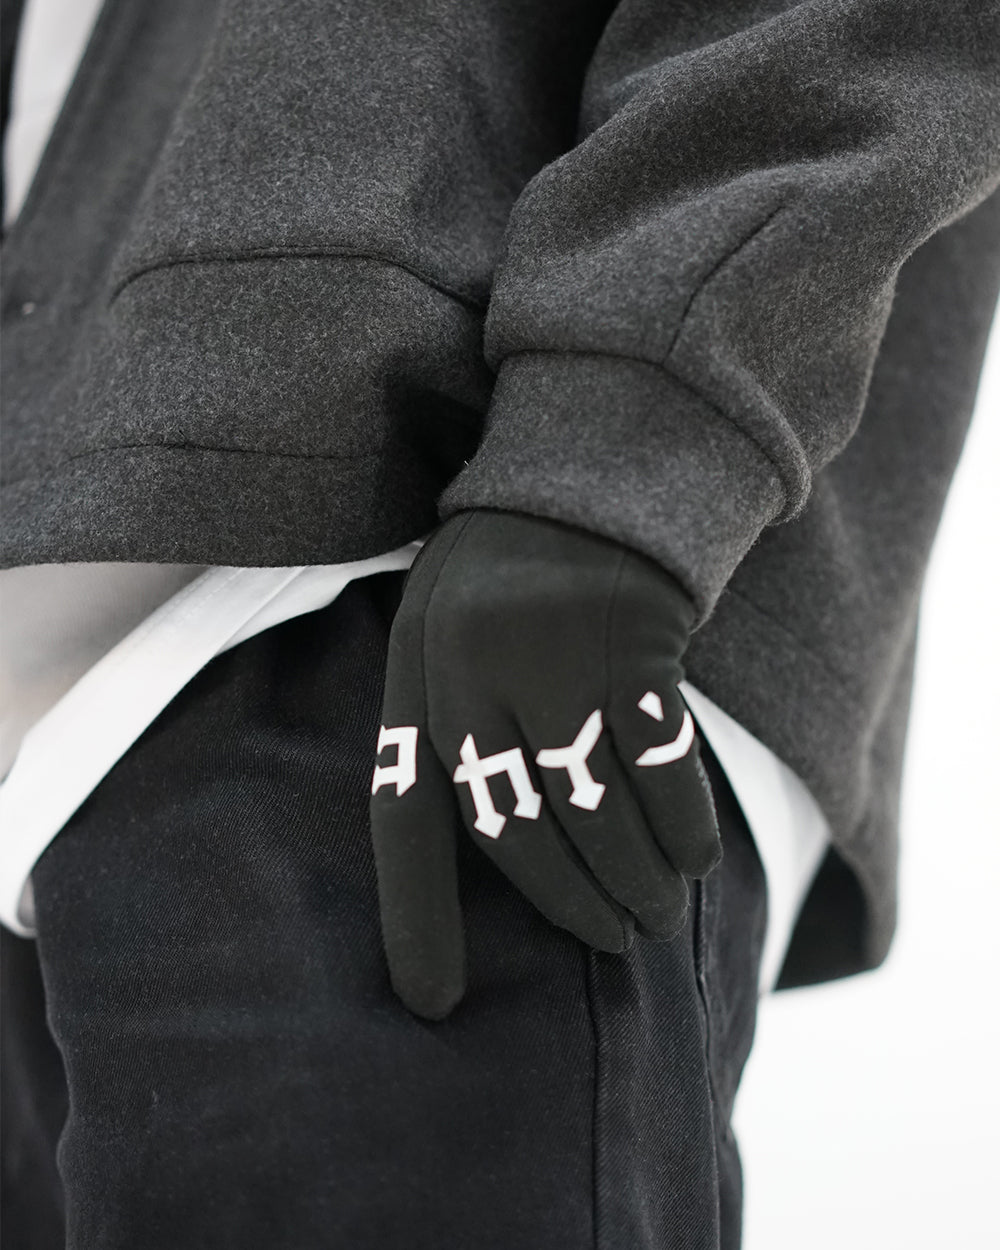 Winter Gloves ///